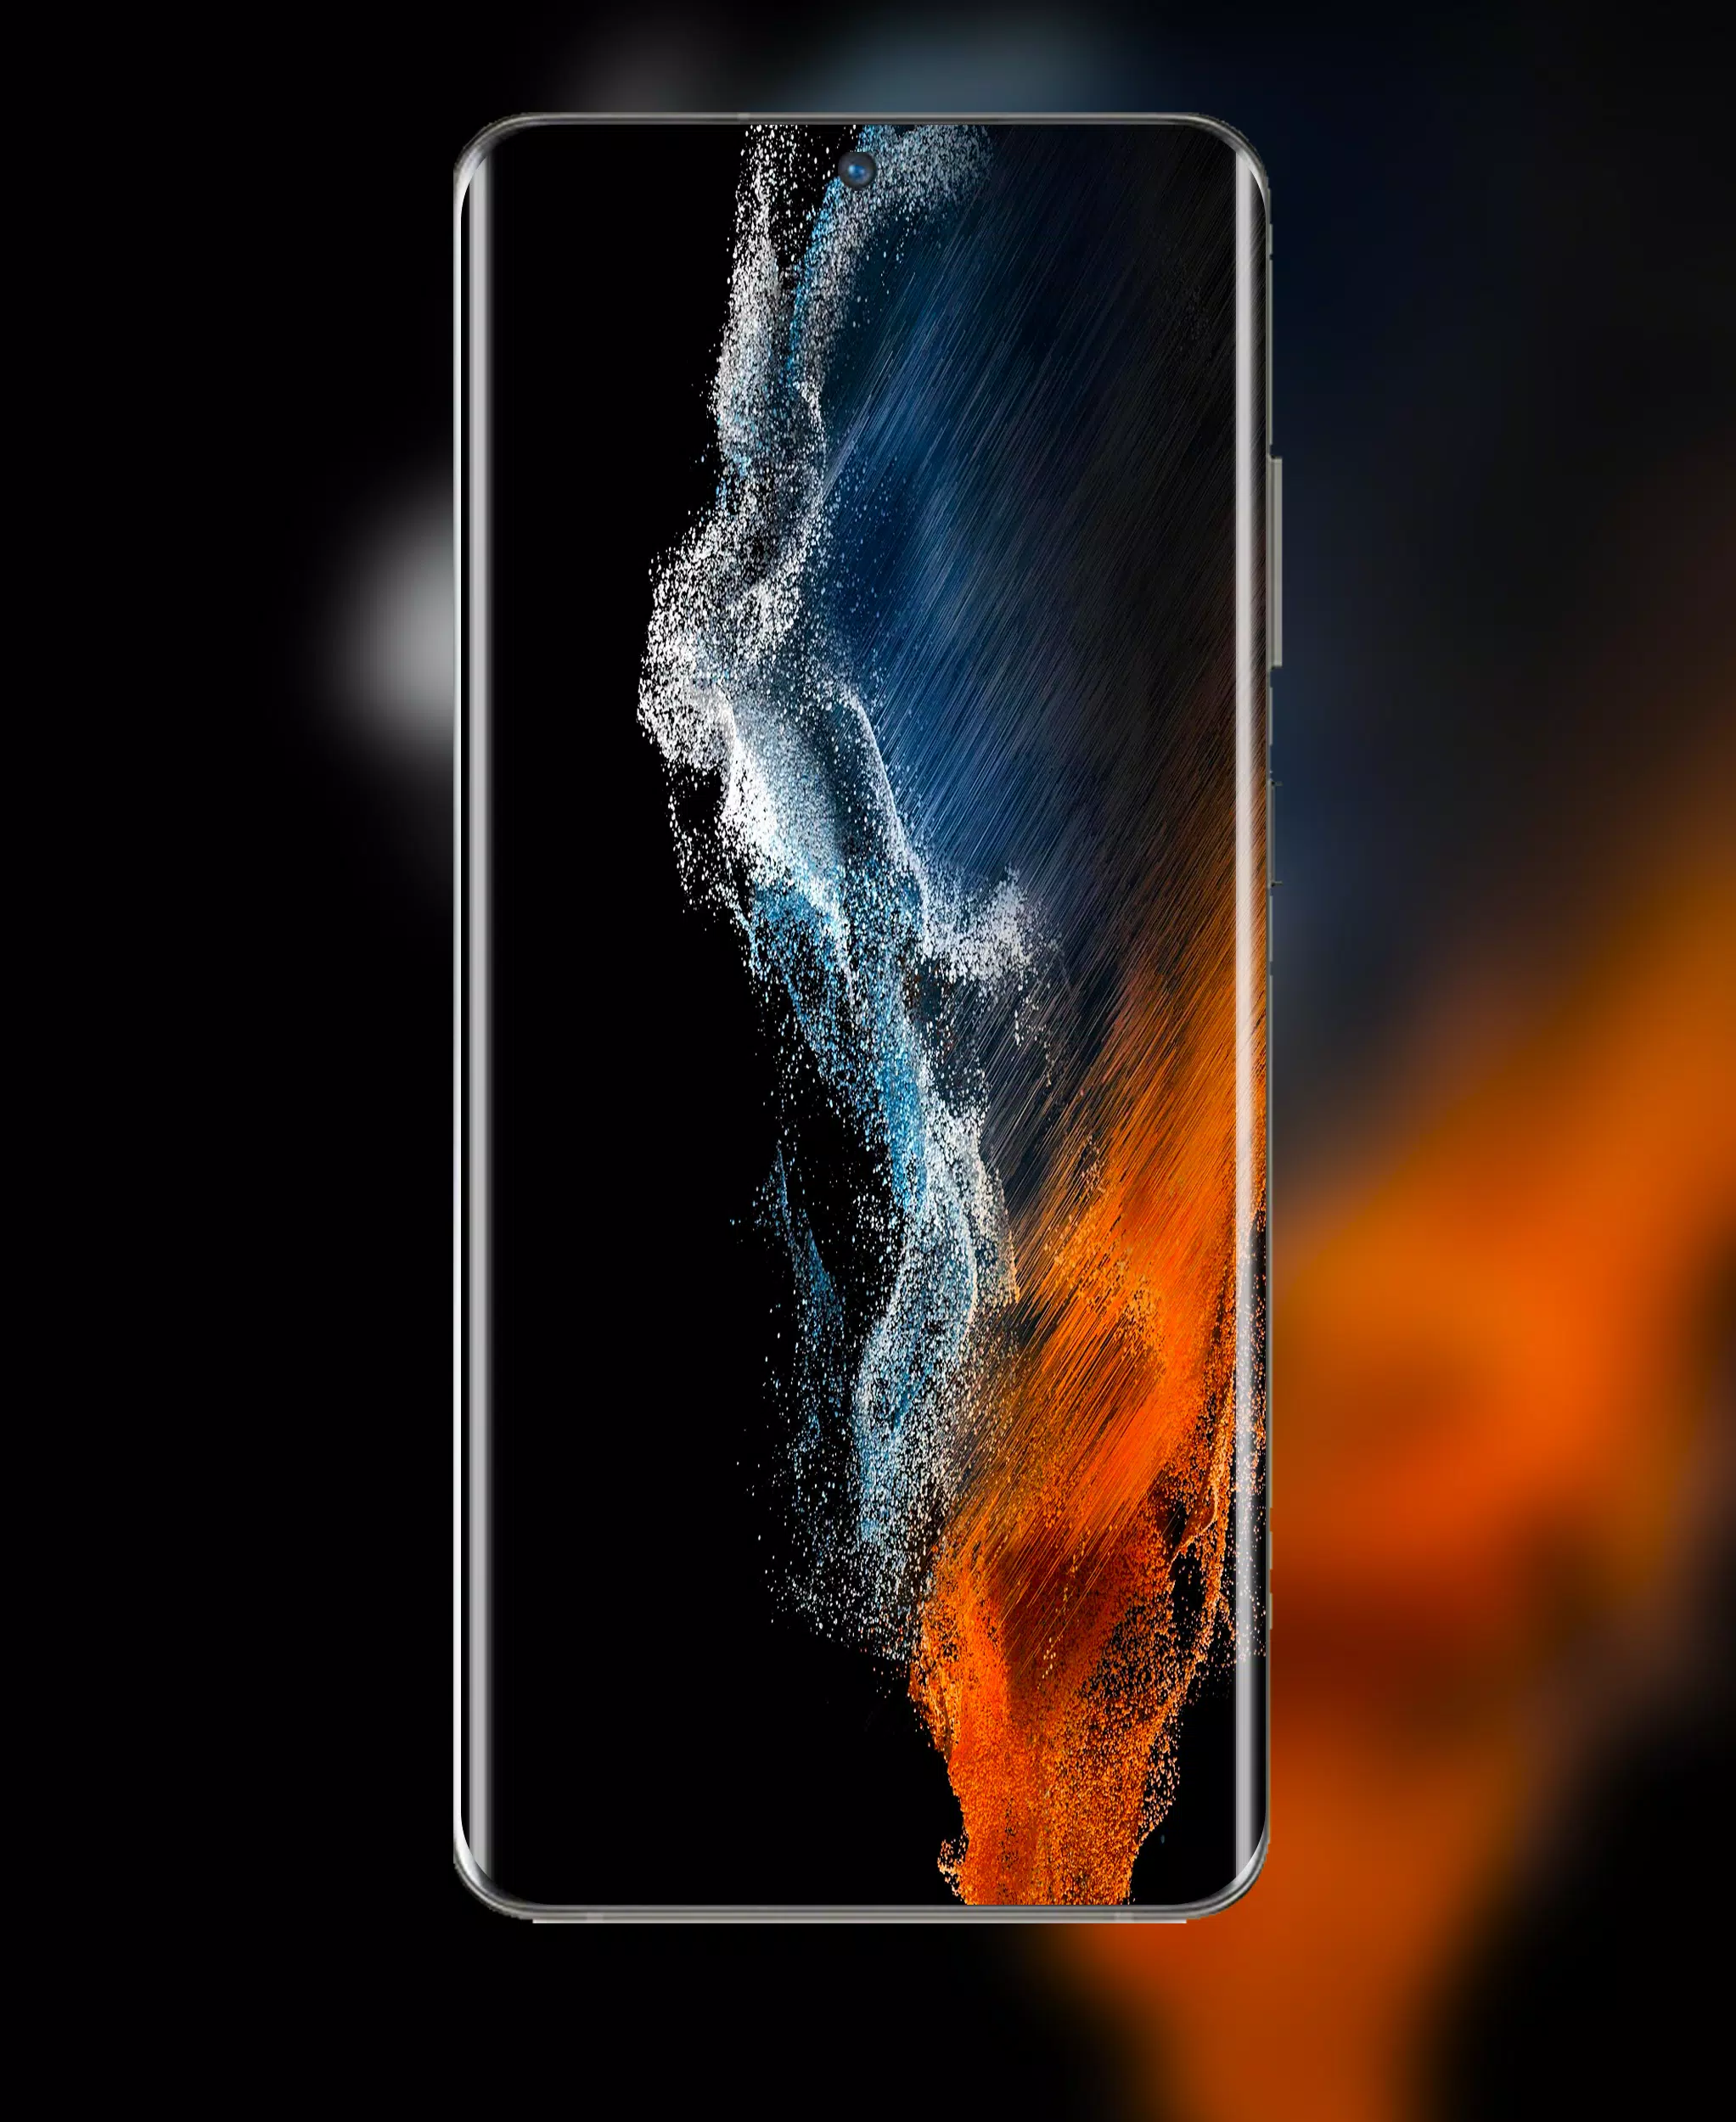 Chào mừng đến với hình nền chất lượng cao của Samsung Galaxy S22 Ultra! Với thiết kế độc đáo, hình ảnh rực rỡ, bạn sẽ không thể rời mắt khỏi nó. Bắt đầu trải nghiệm và tải về ngay lập tức!